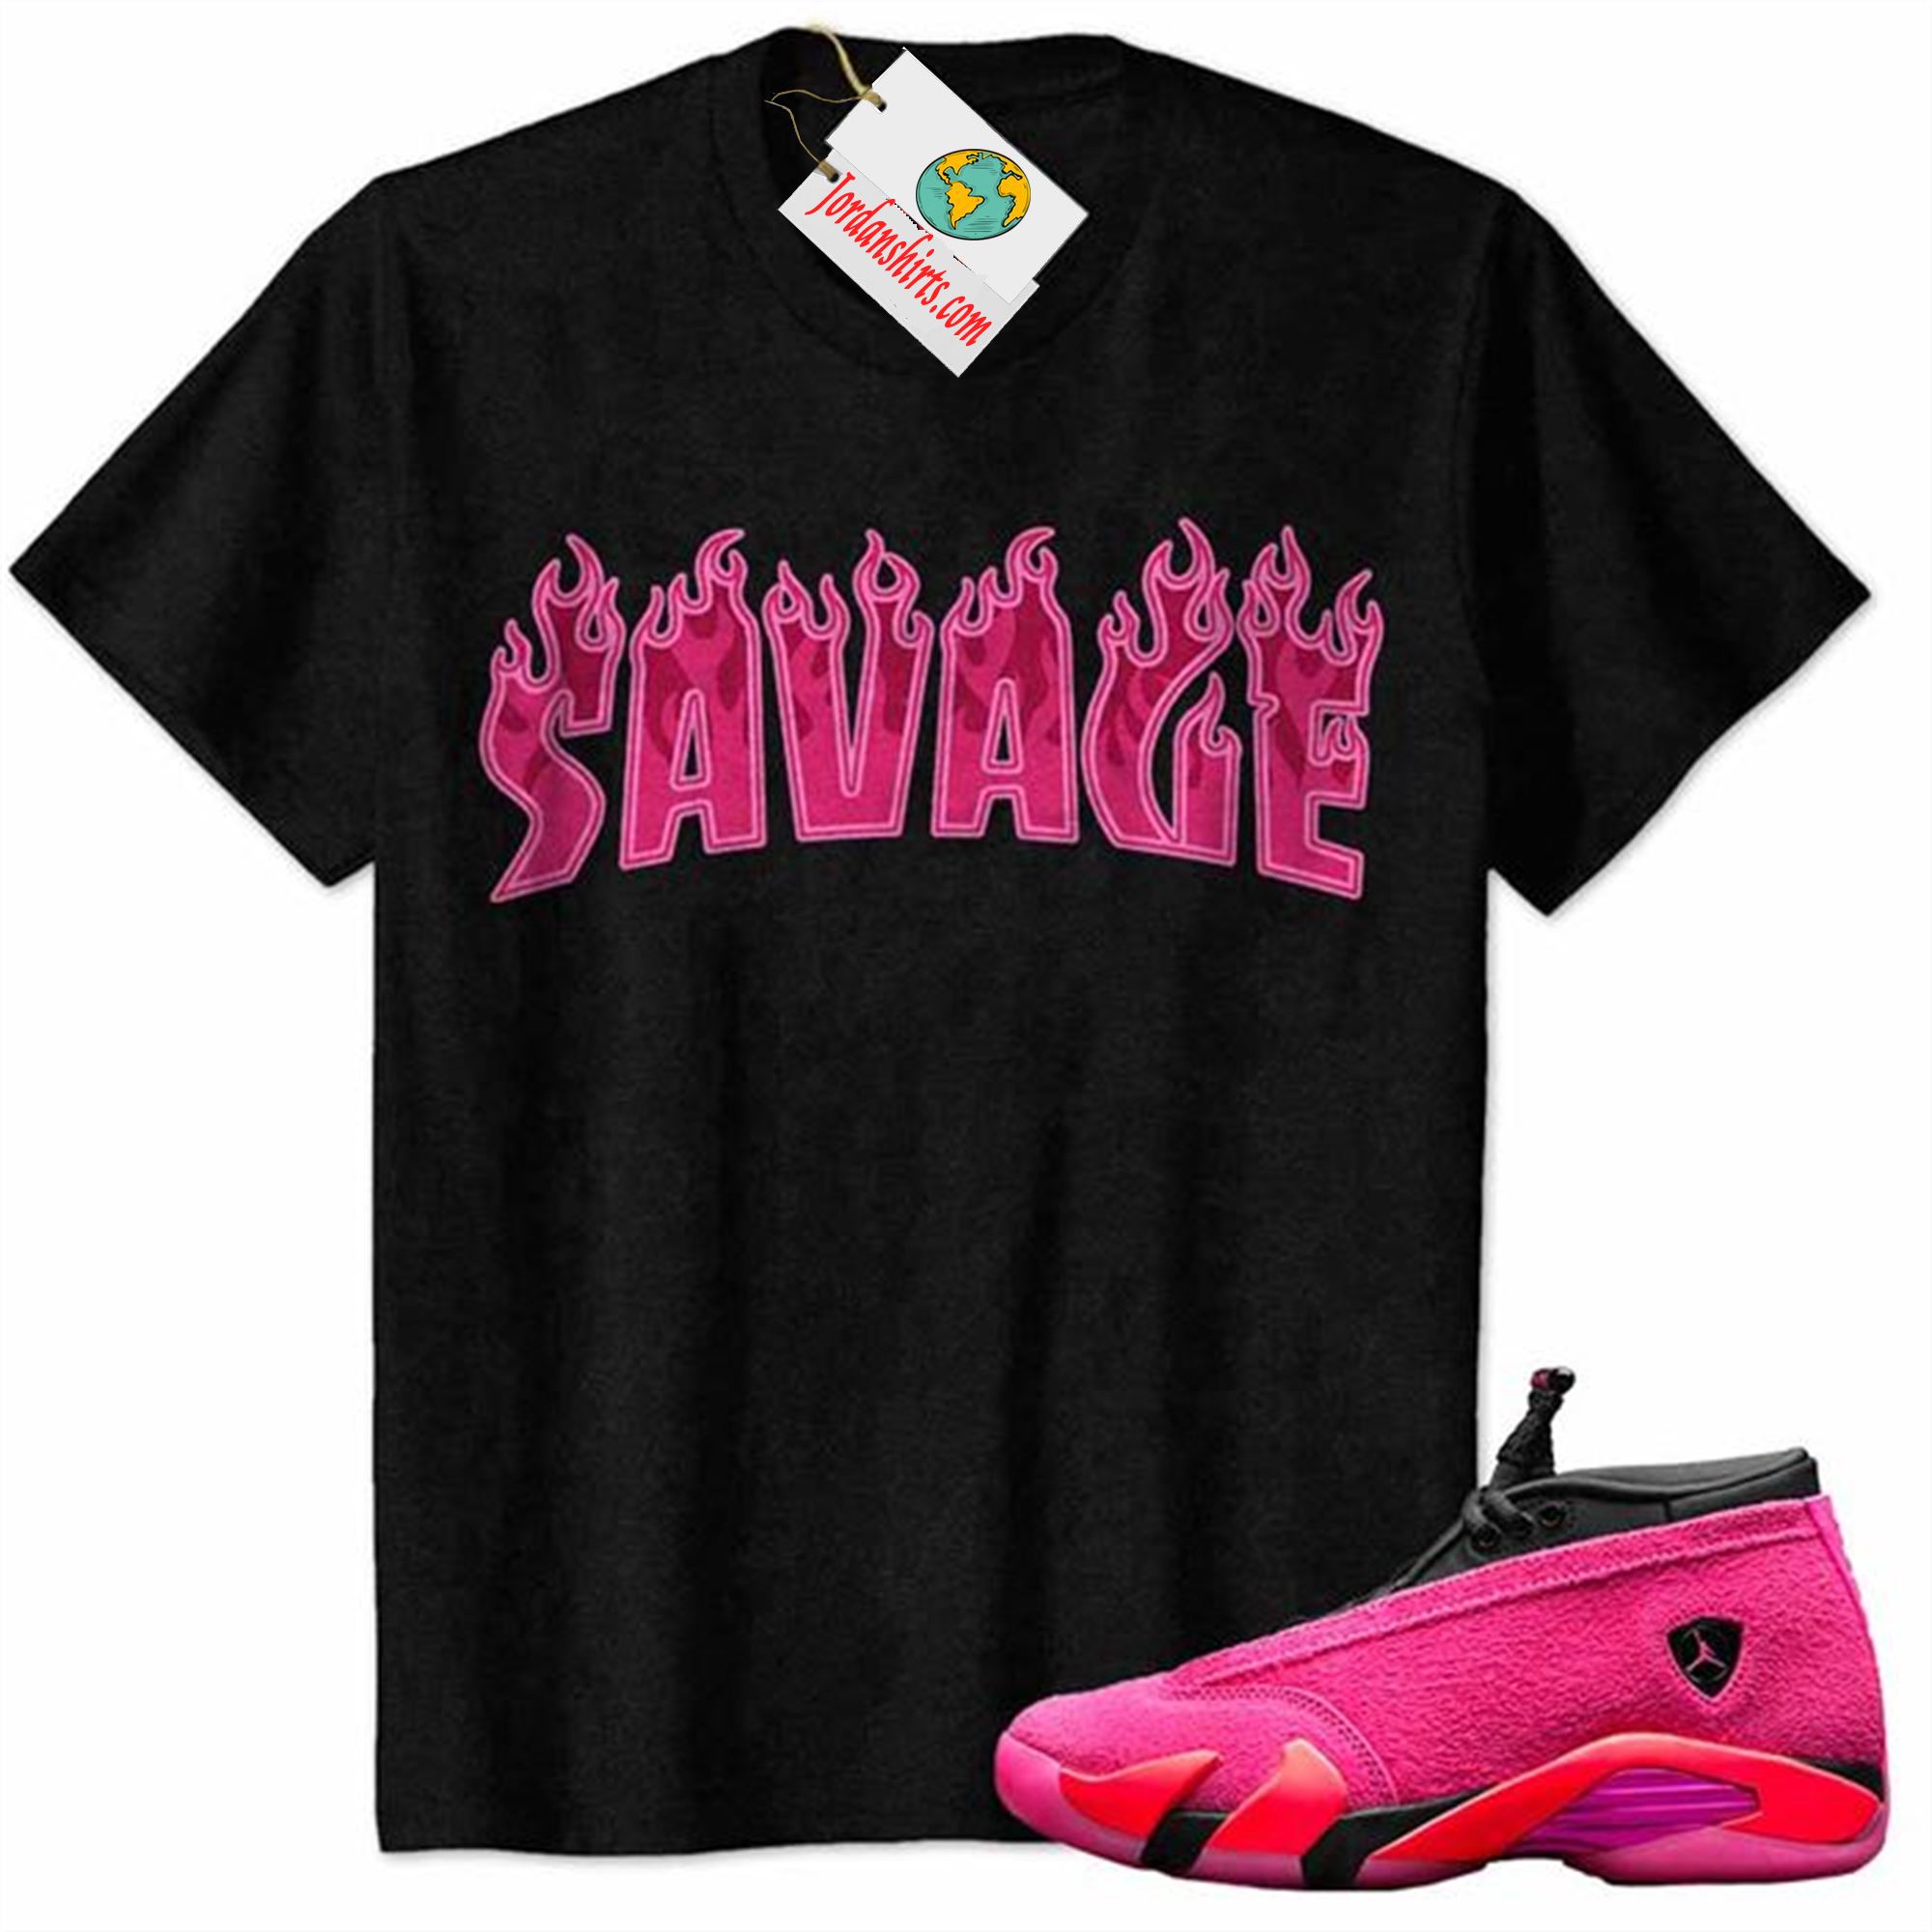 Jordan 14 Shirt, Savage Fire Style Black Air Jordan 14 Wmns Shocking Pink 14s Full Size Up To 5xl